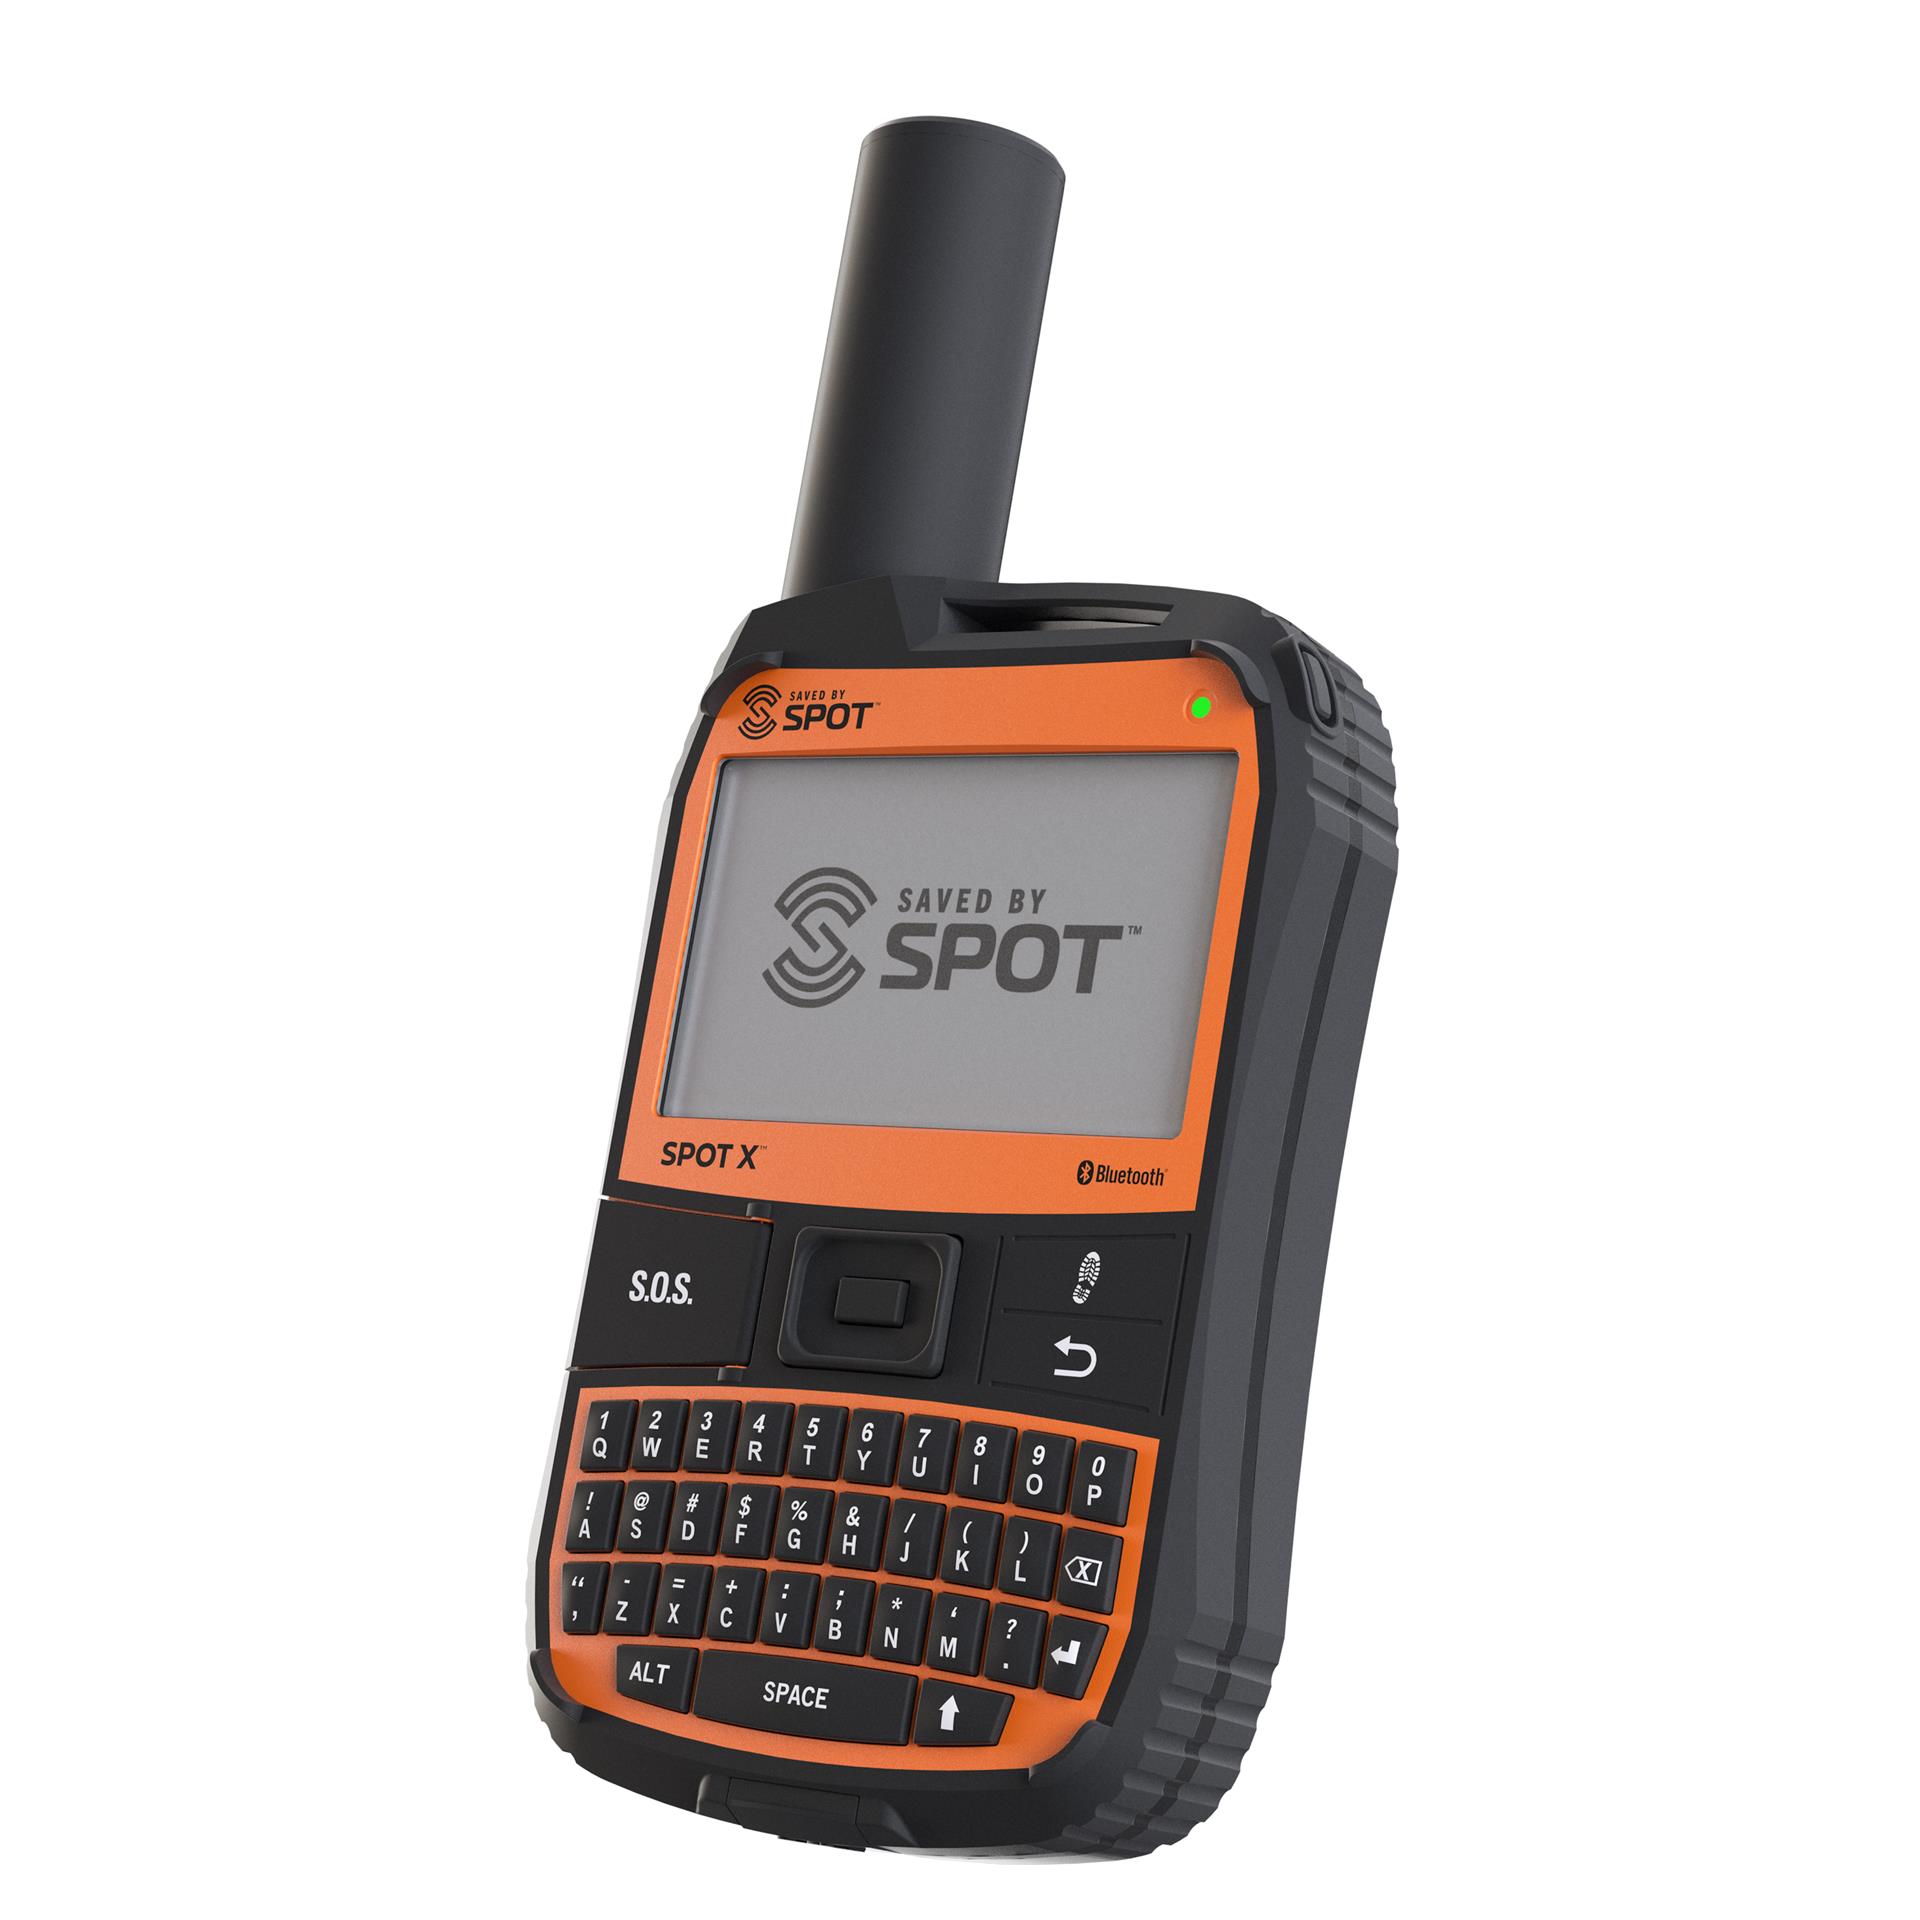 SPOTX Bluetooth 2-Way satelītkomunikāciju ierīce